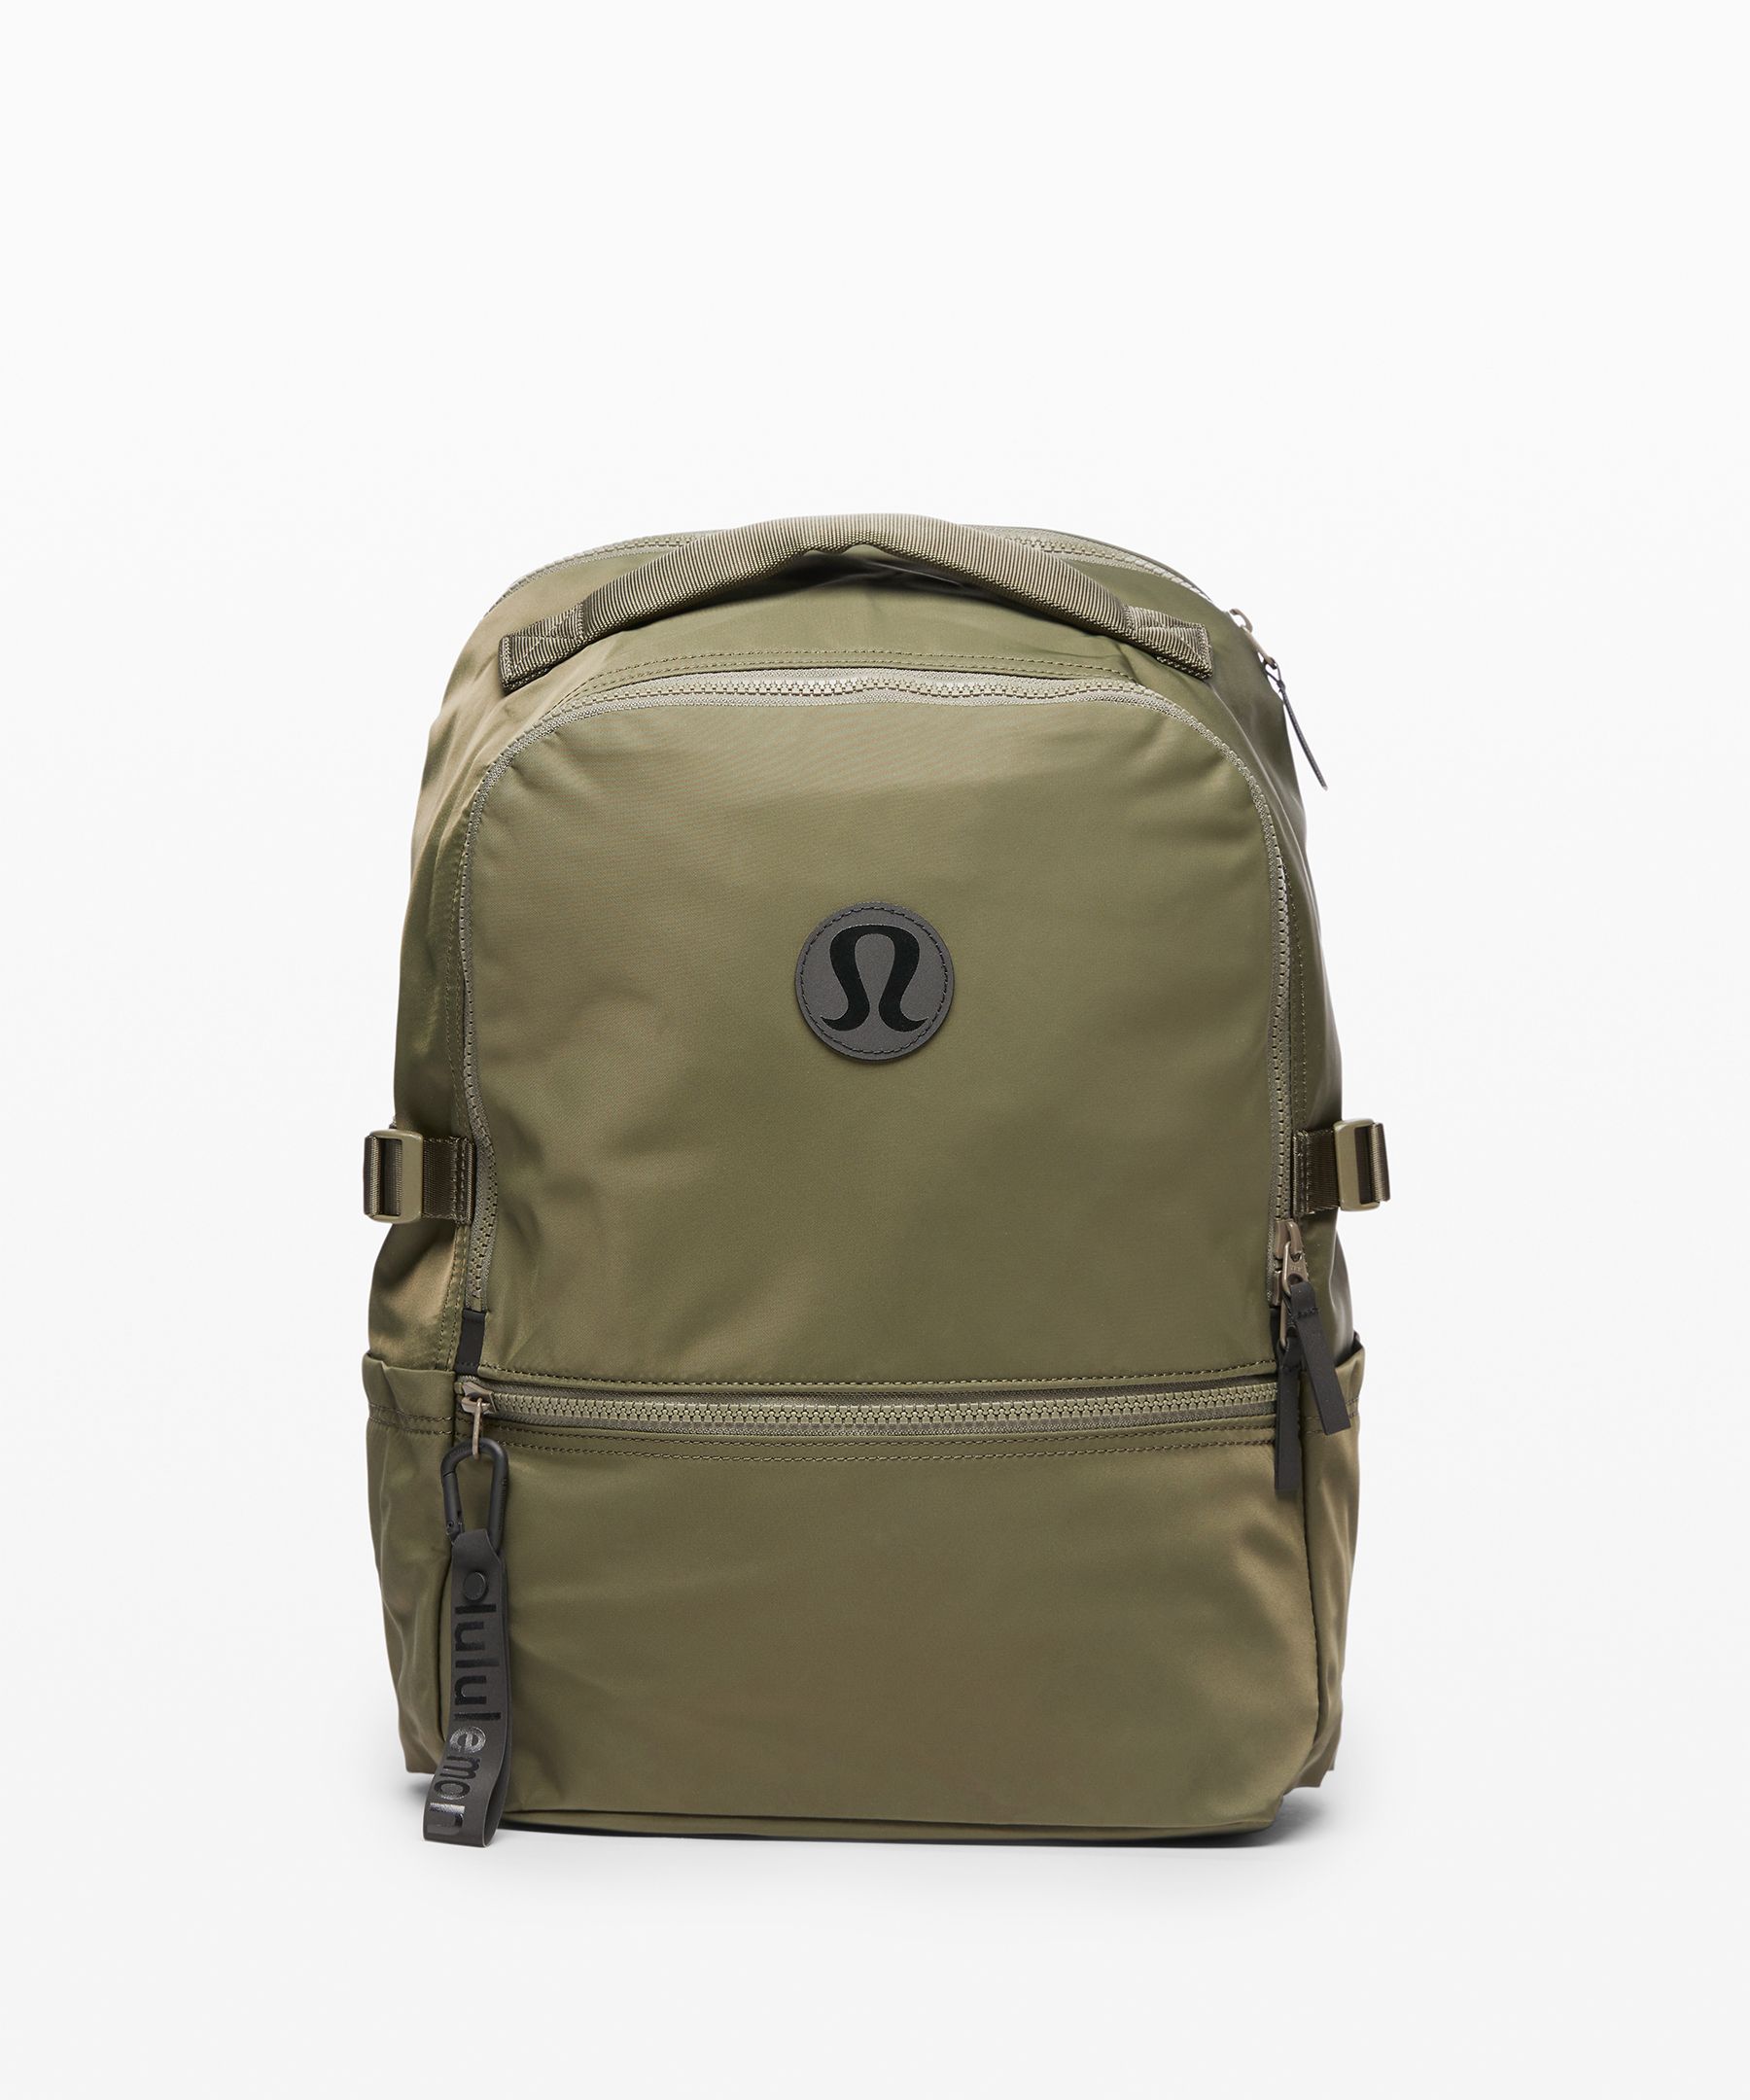 lululemon green backpack